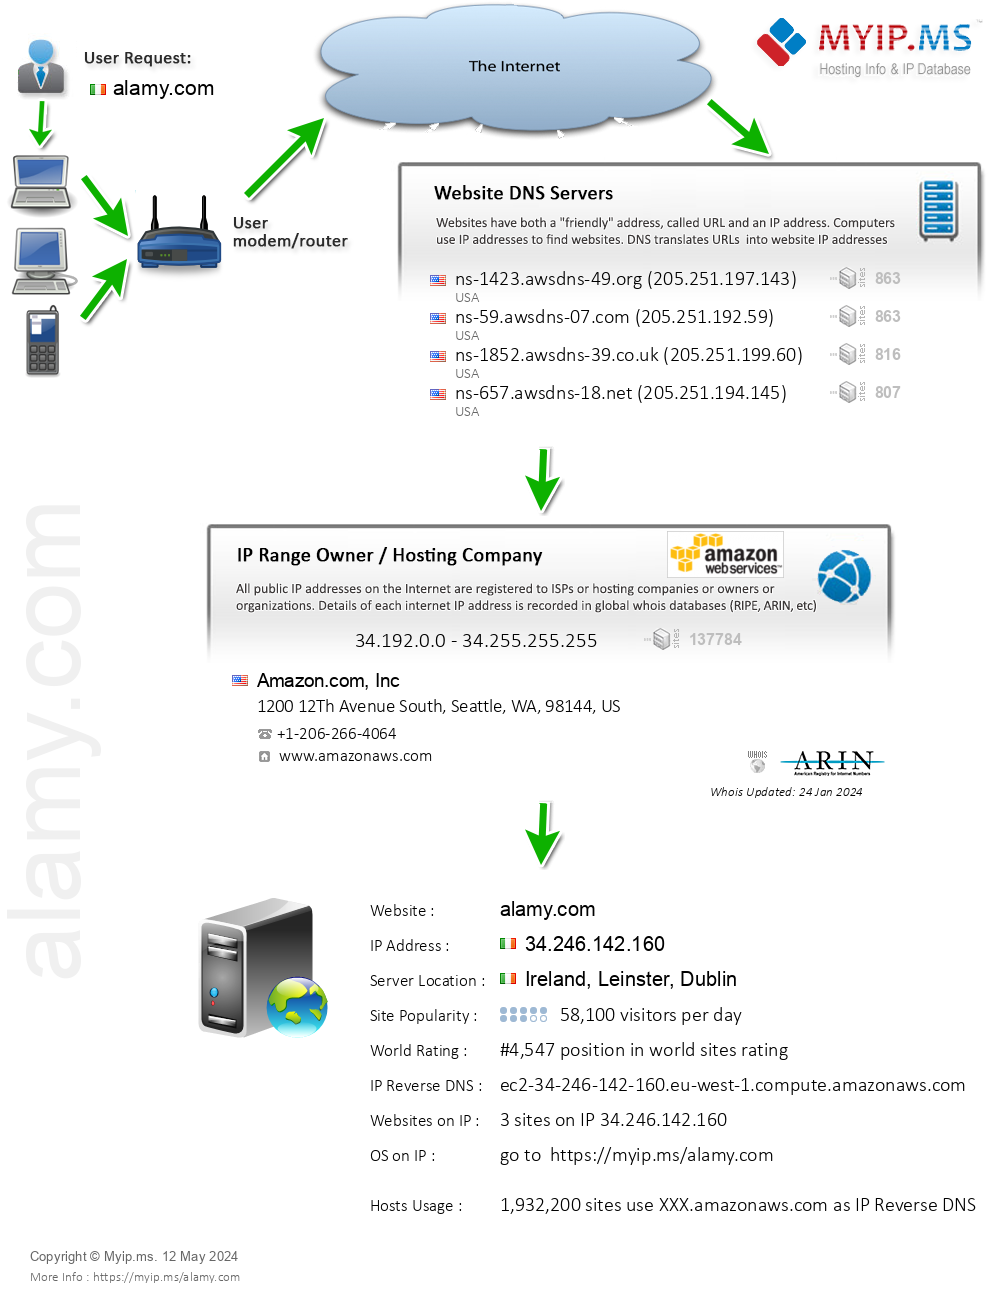 Alamy.com - Website Hosting Visual IP Diagram